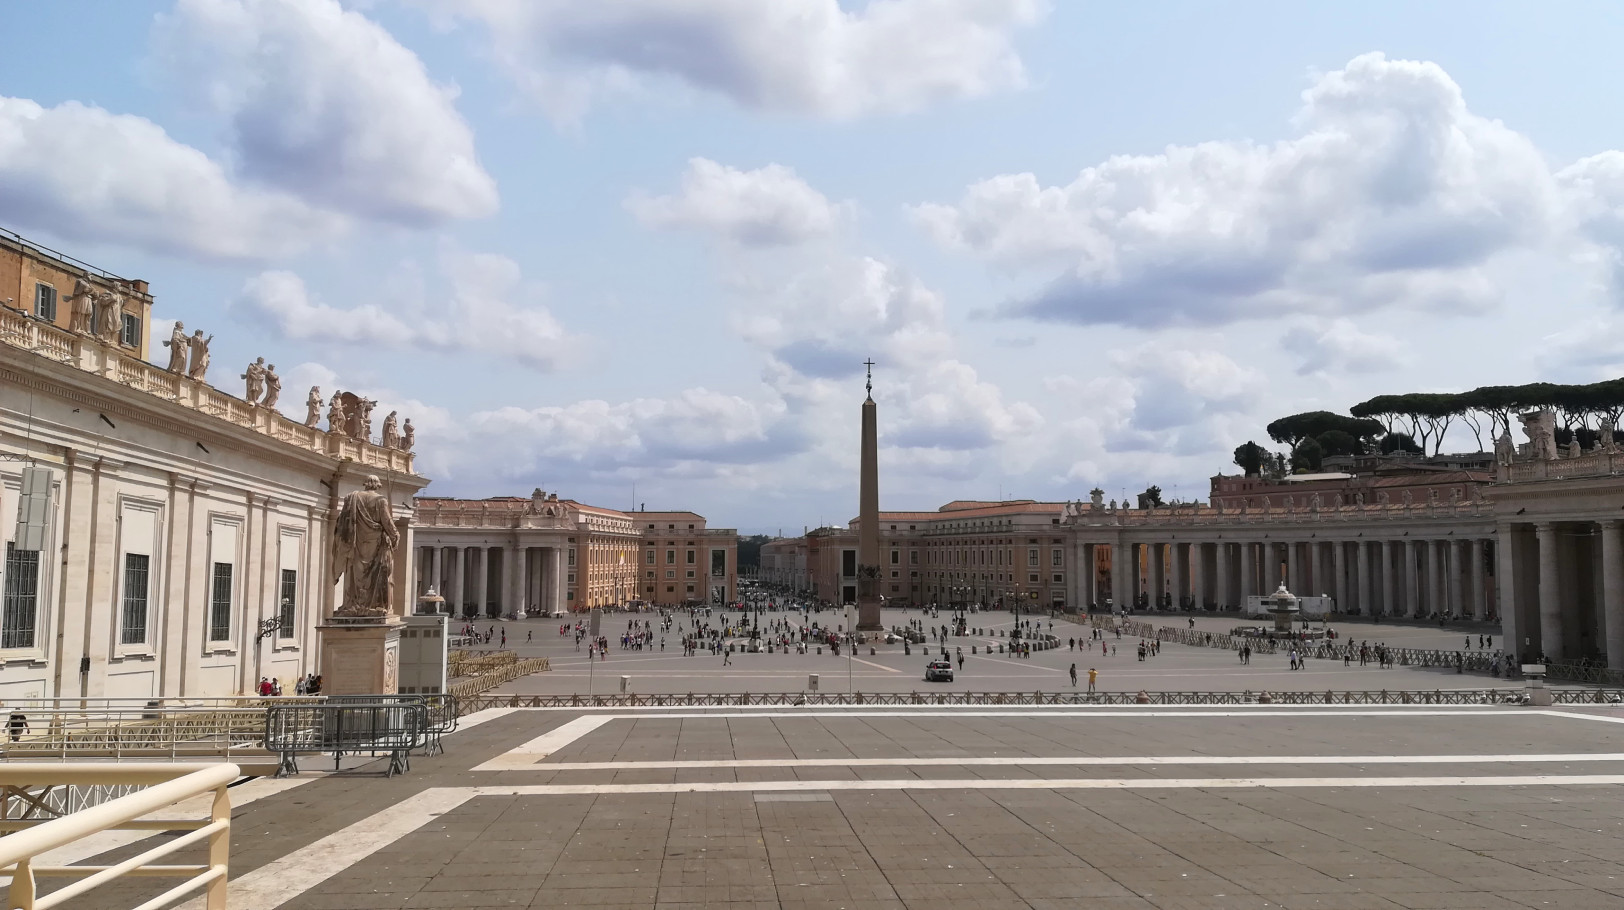 Visitar el Vaticano